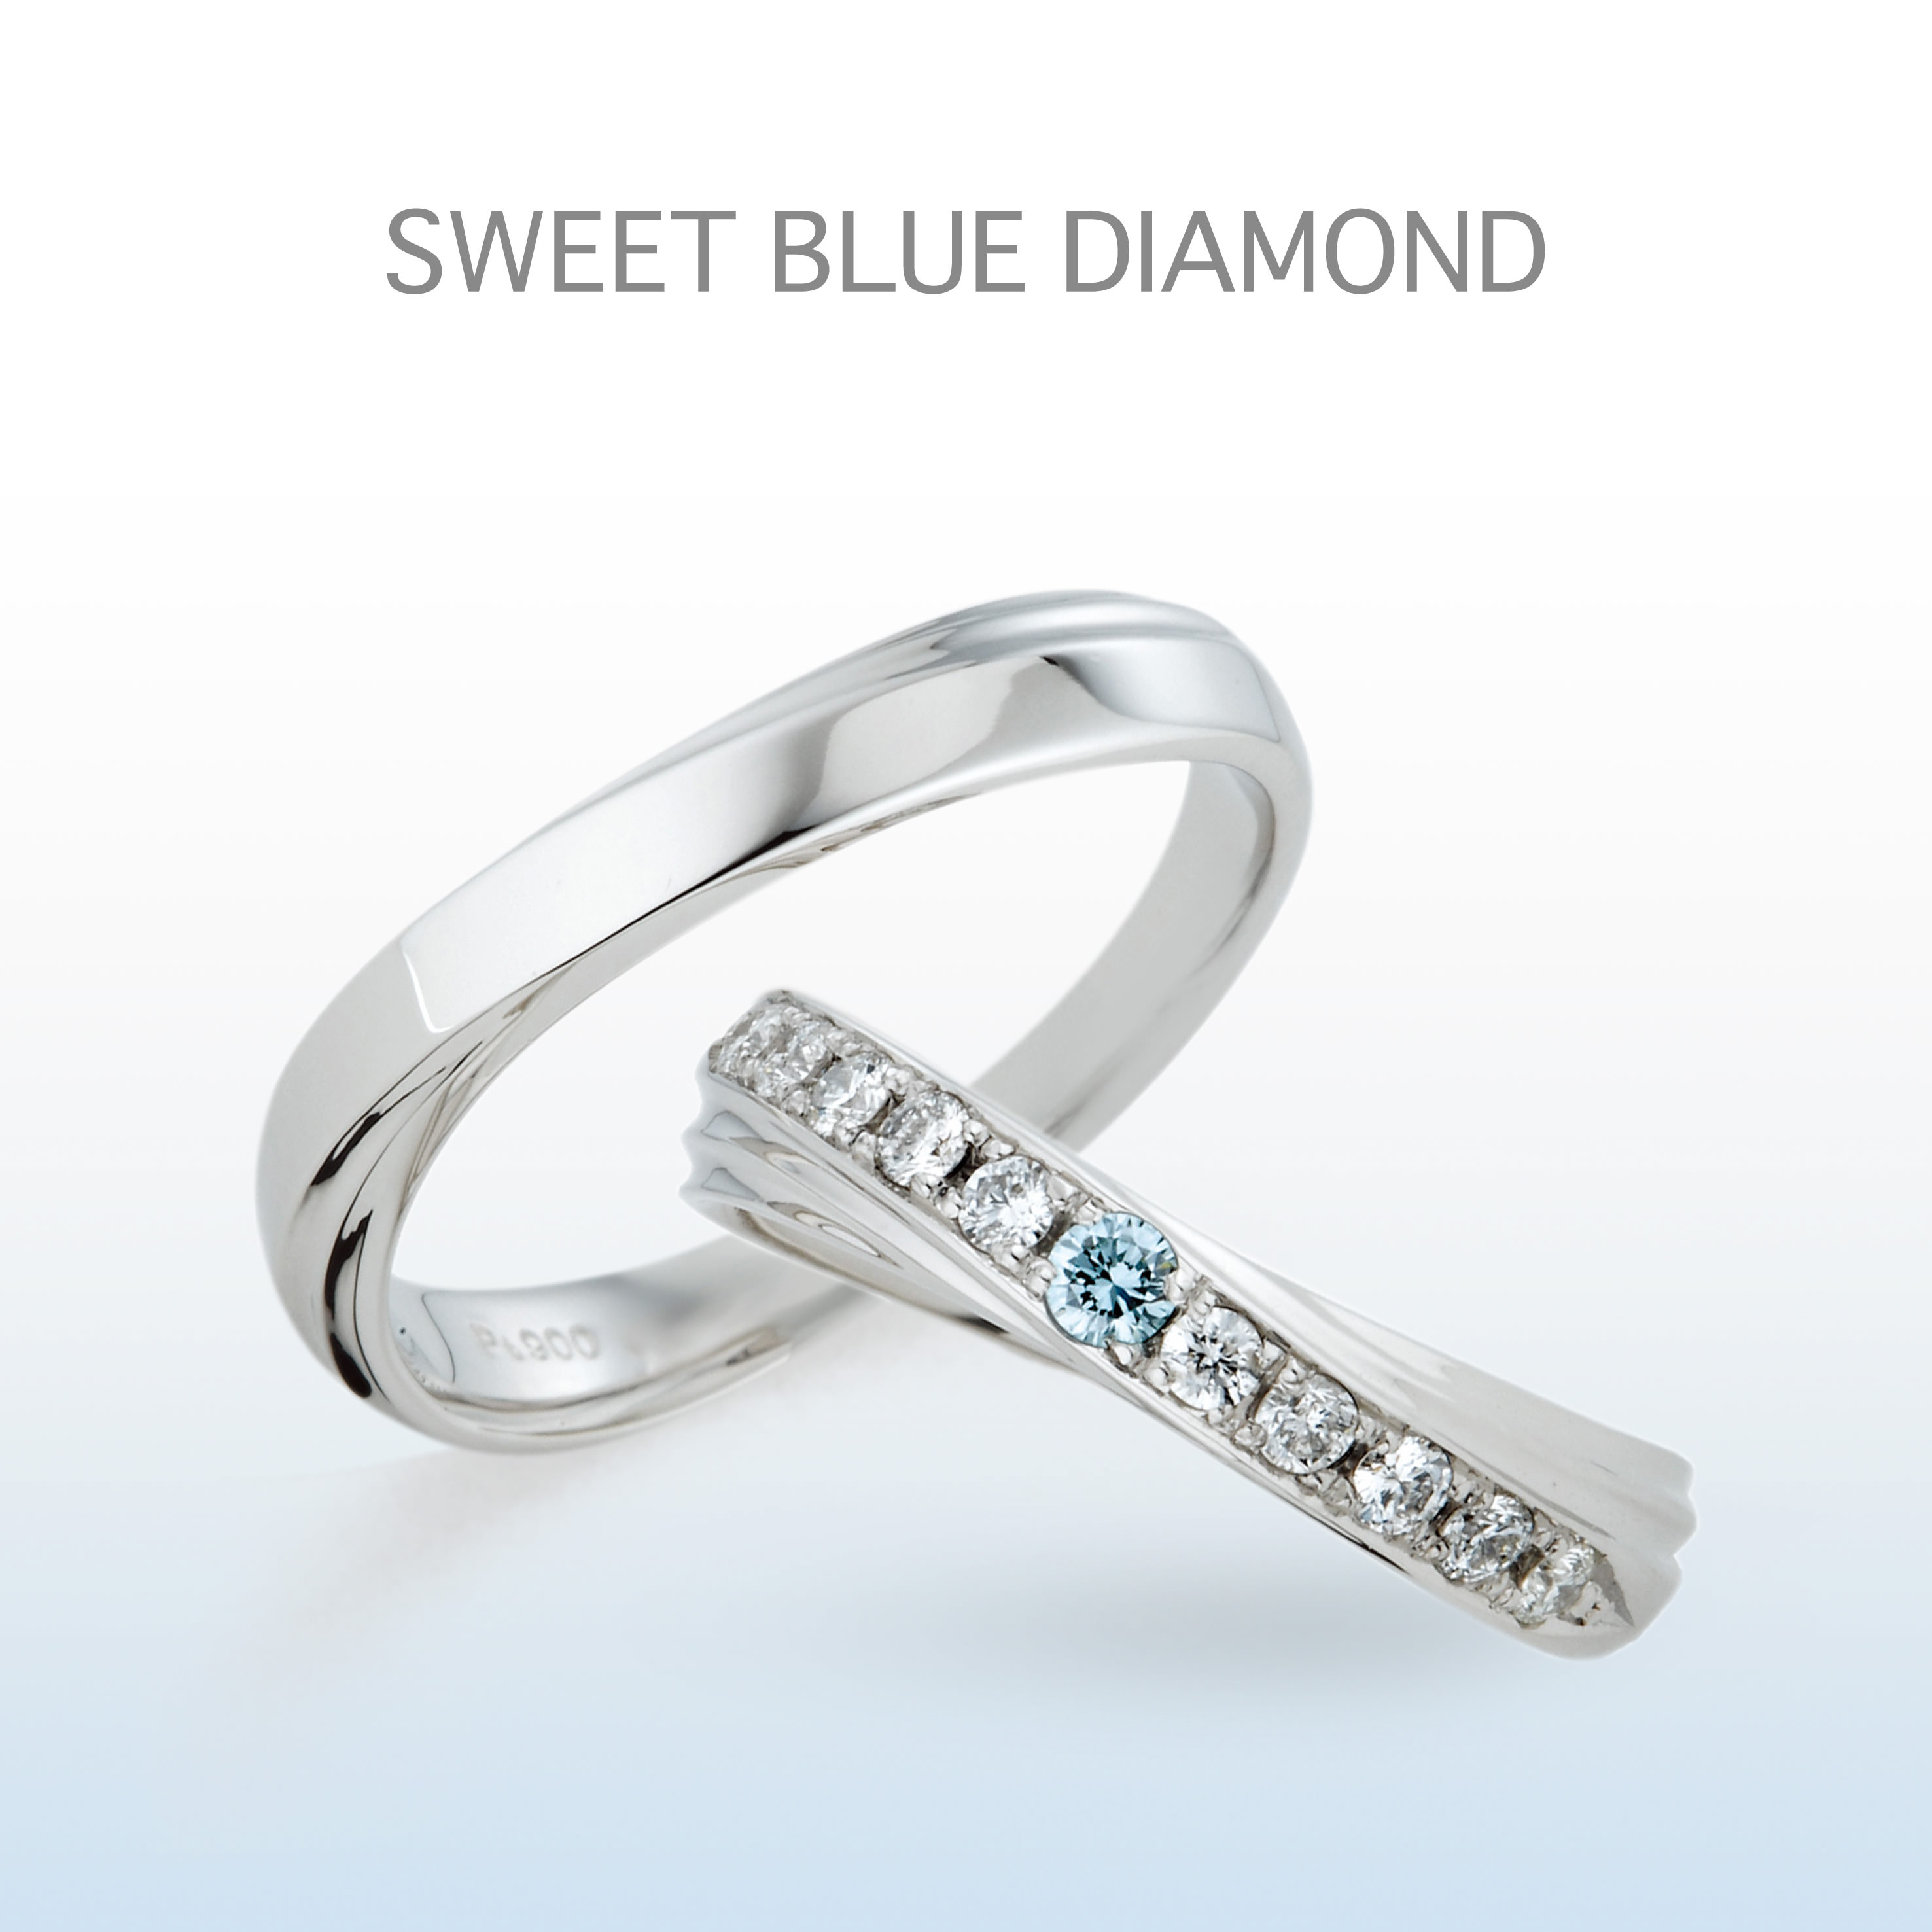 ボリューム感のあるリングに斜めに施されたダイヤモンド。動きのあるデザインが指をきれいにみせる効果も。